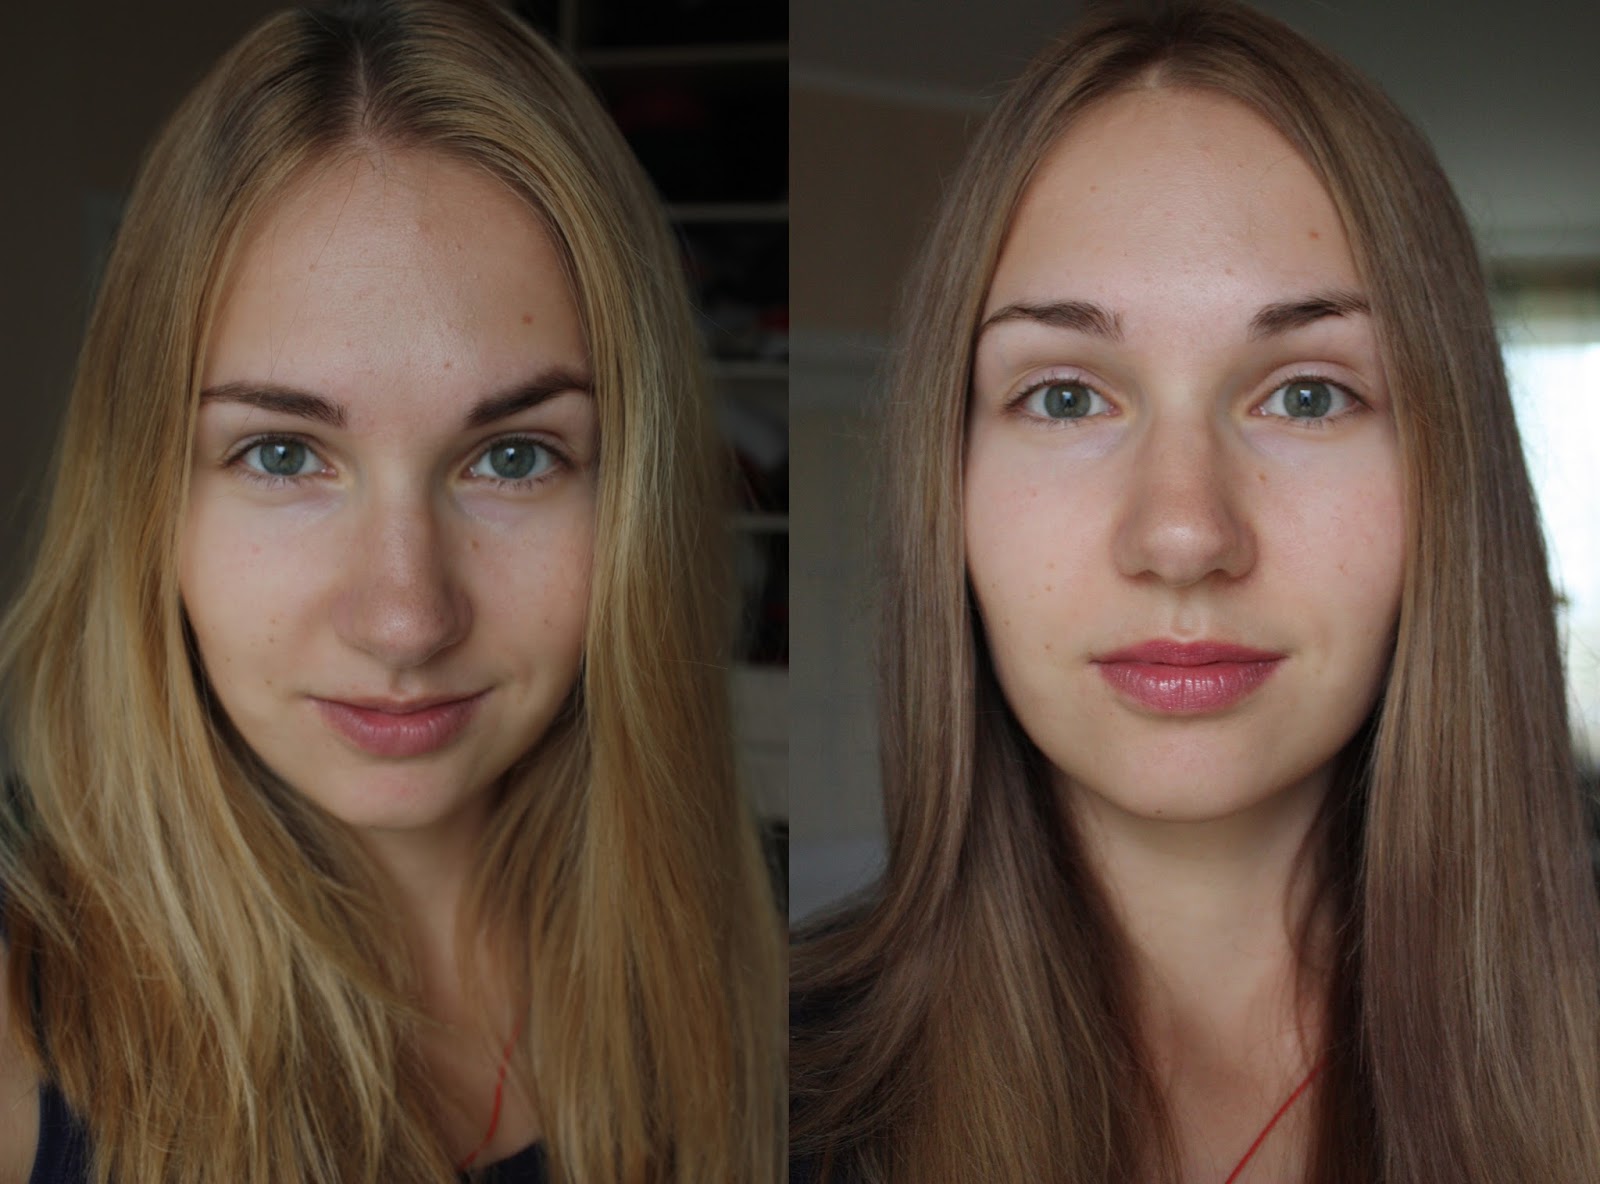 Русый цвет волос краска фото до и после окрашивания